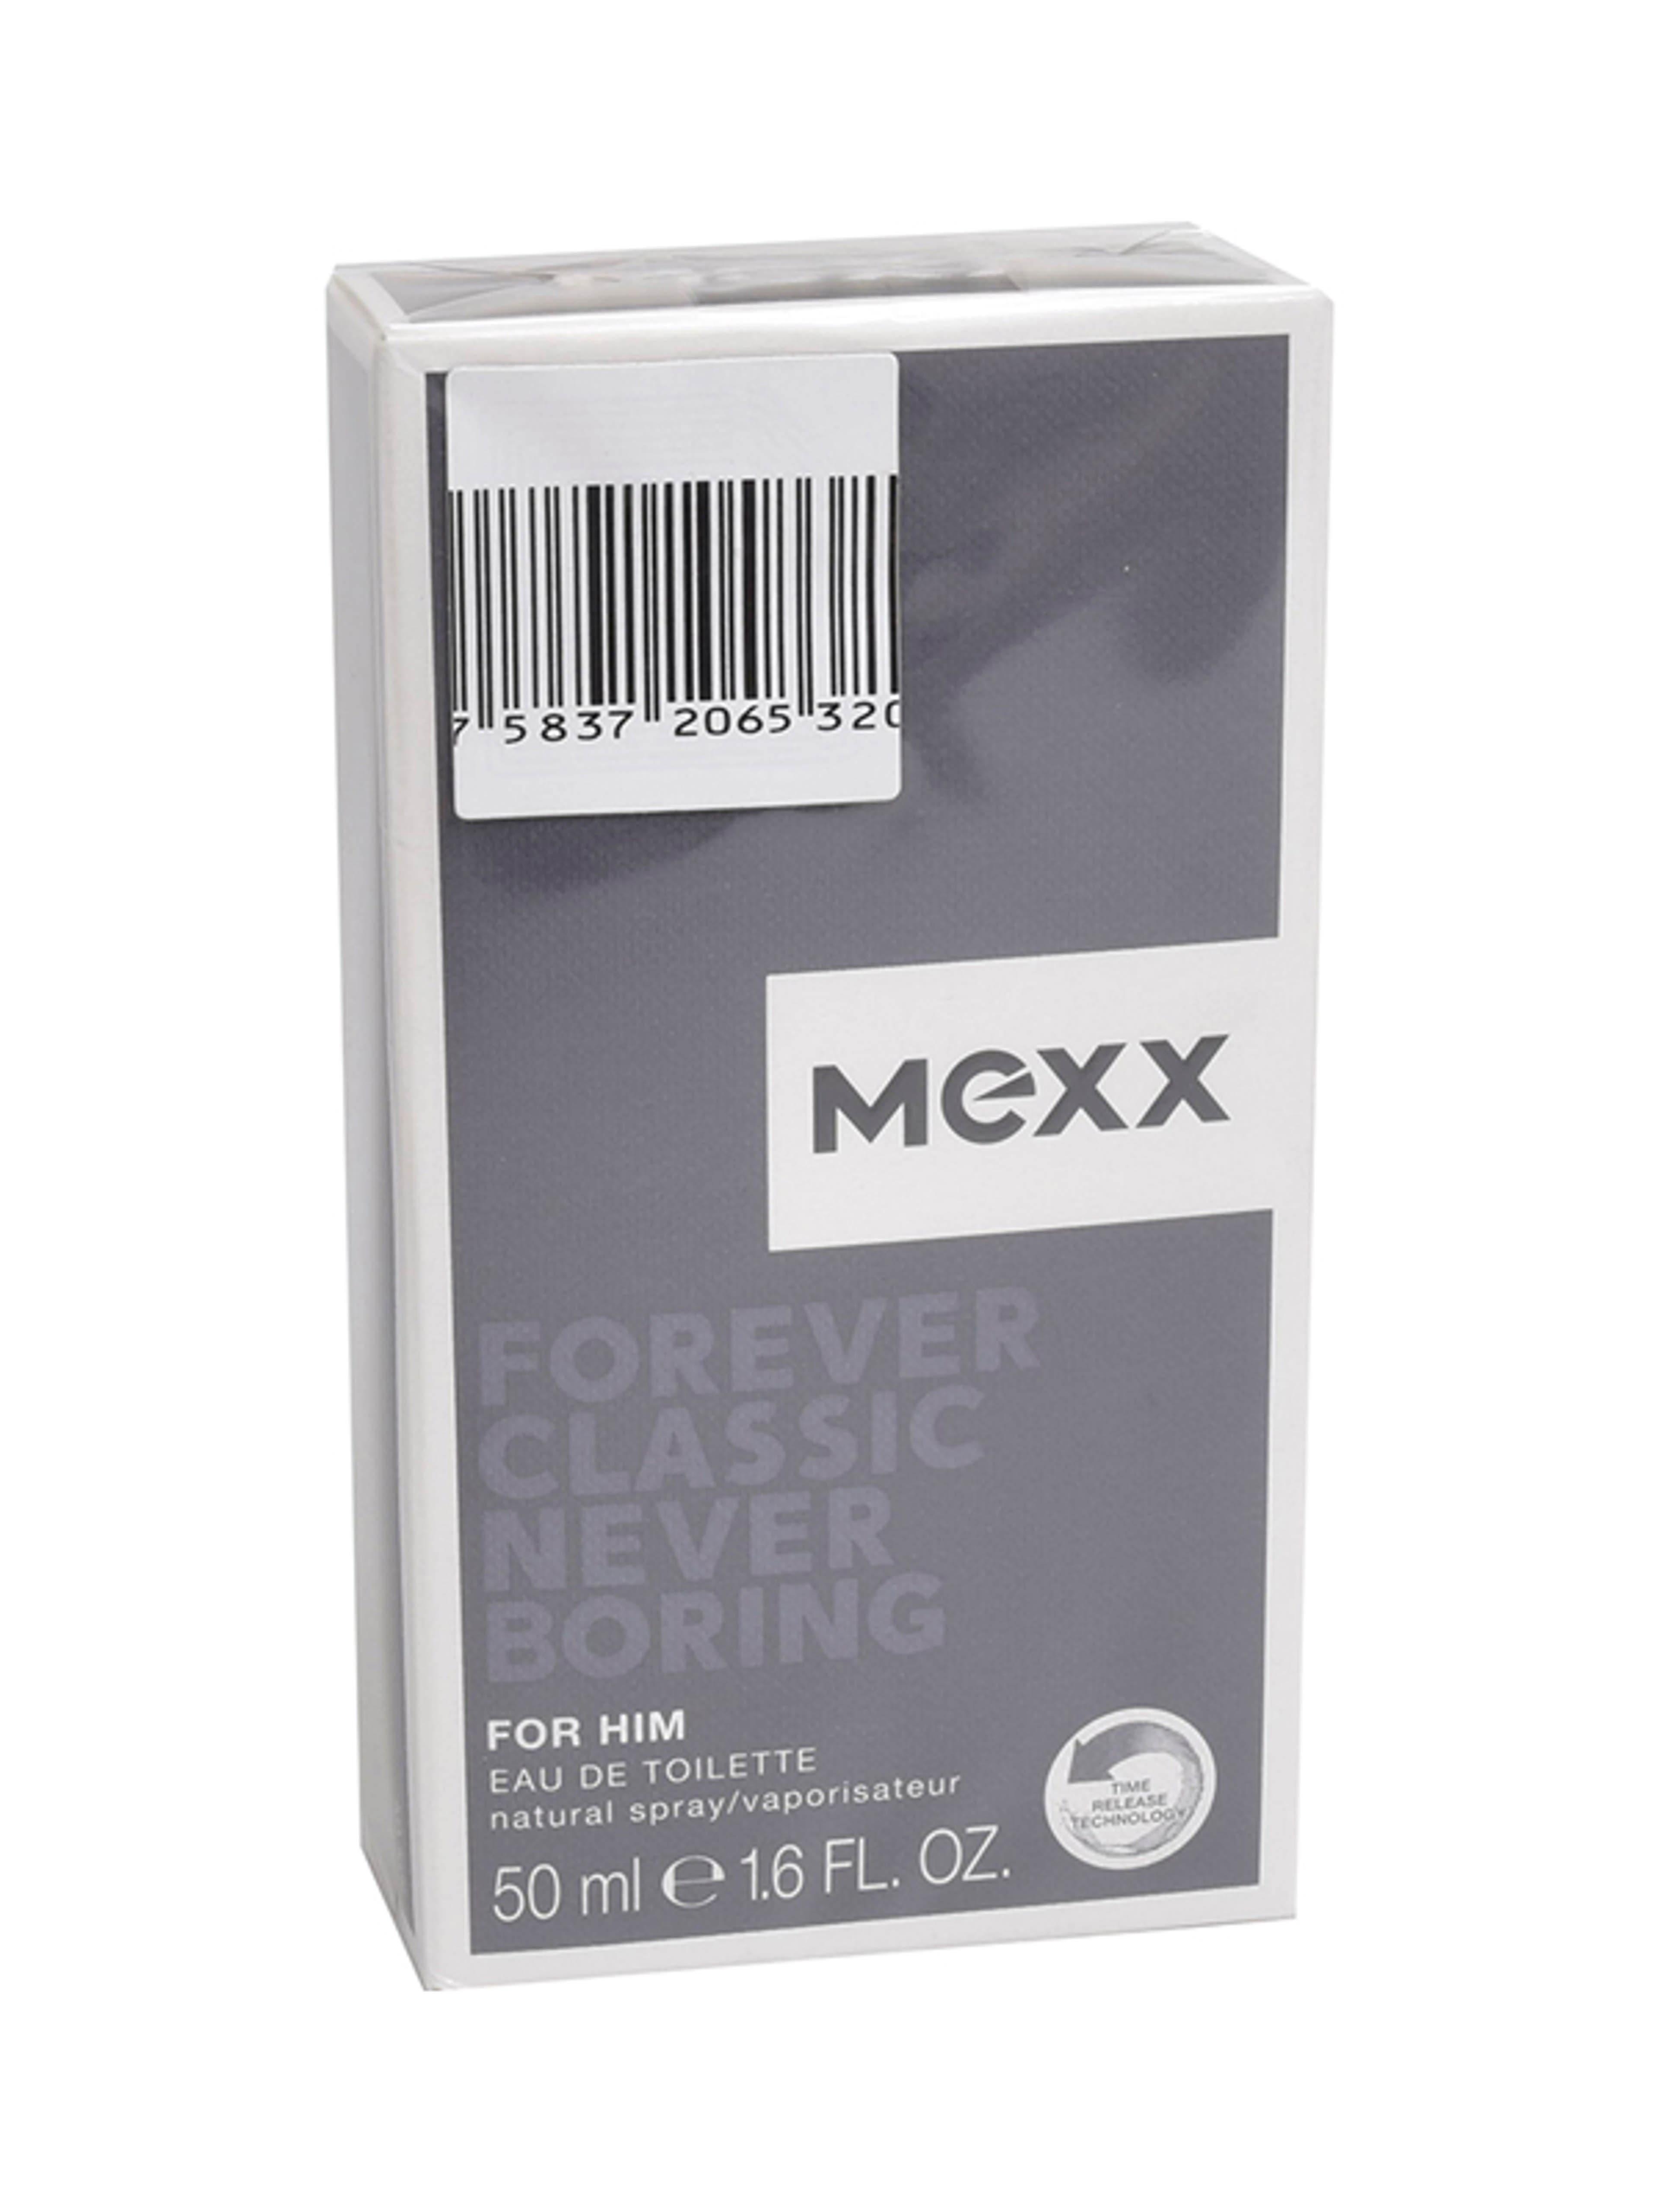 Mexx forever classic never boring férfi eau de toilette - 50 ml